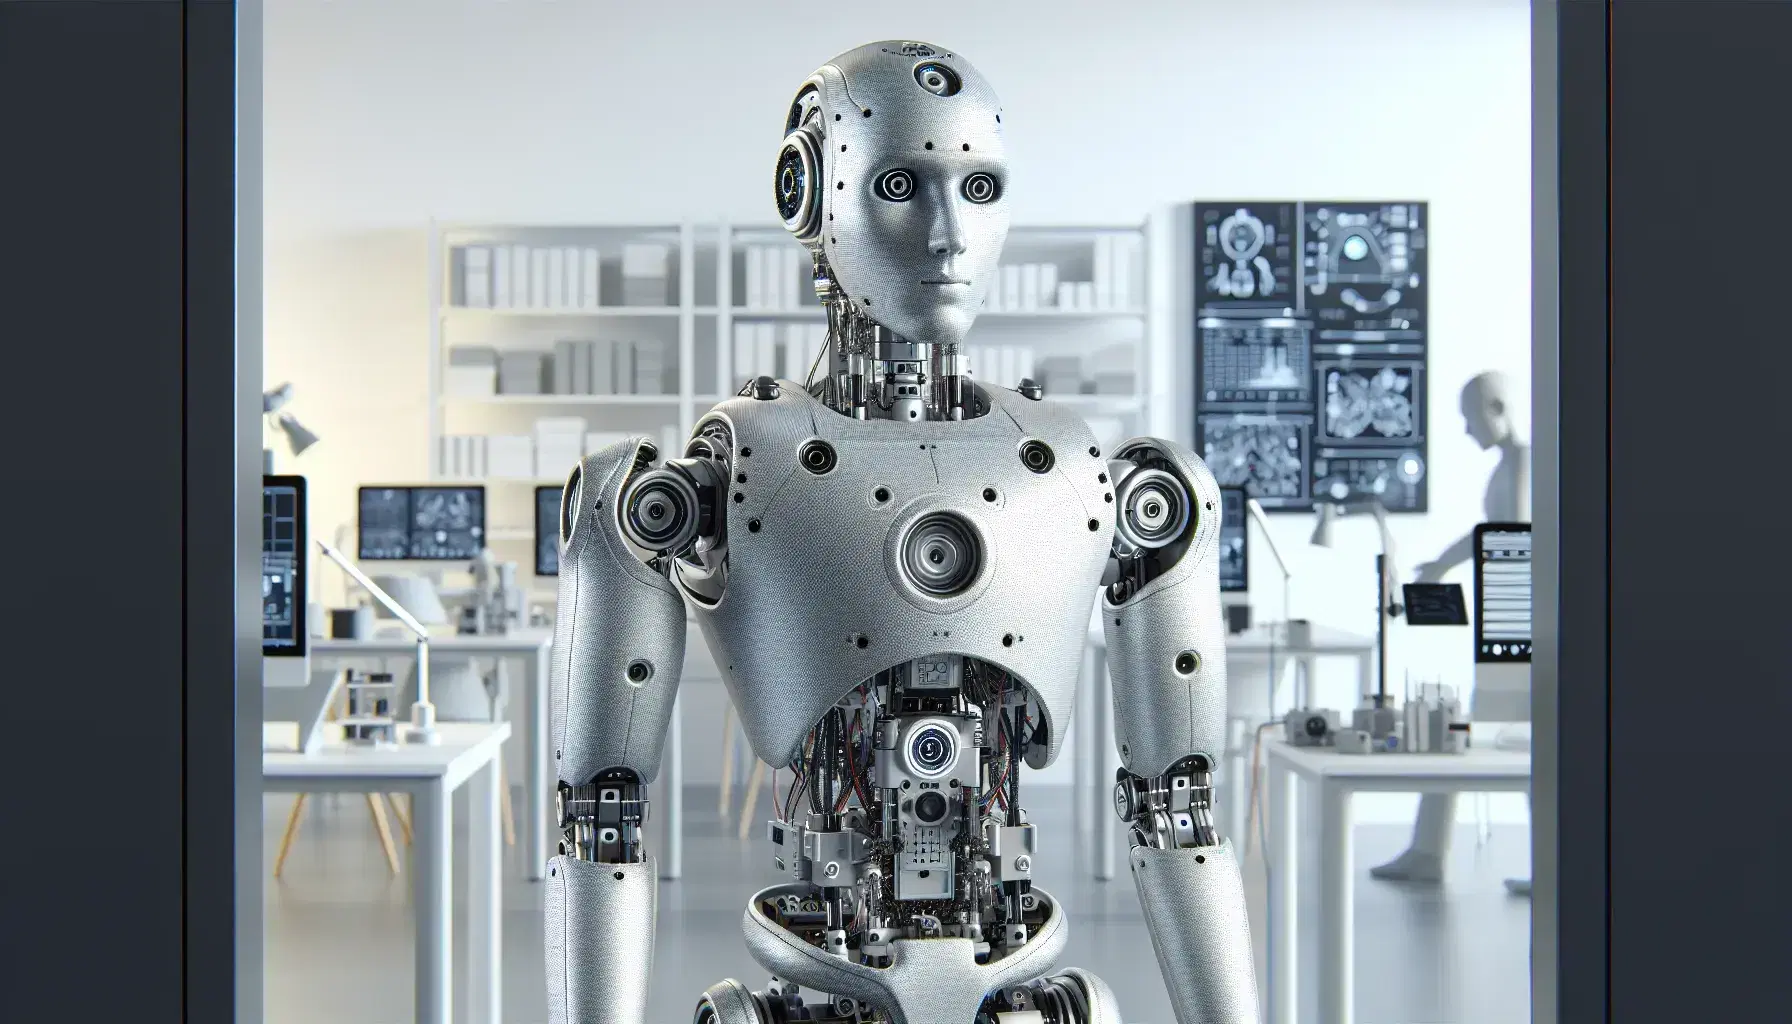 Robot humanoide de aspecto moderno en laboratorio de investigación con computadora y componentes electrónicos, destacando su estructura metálica y sensores avanzados.